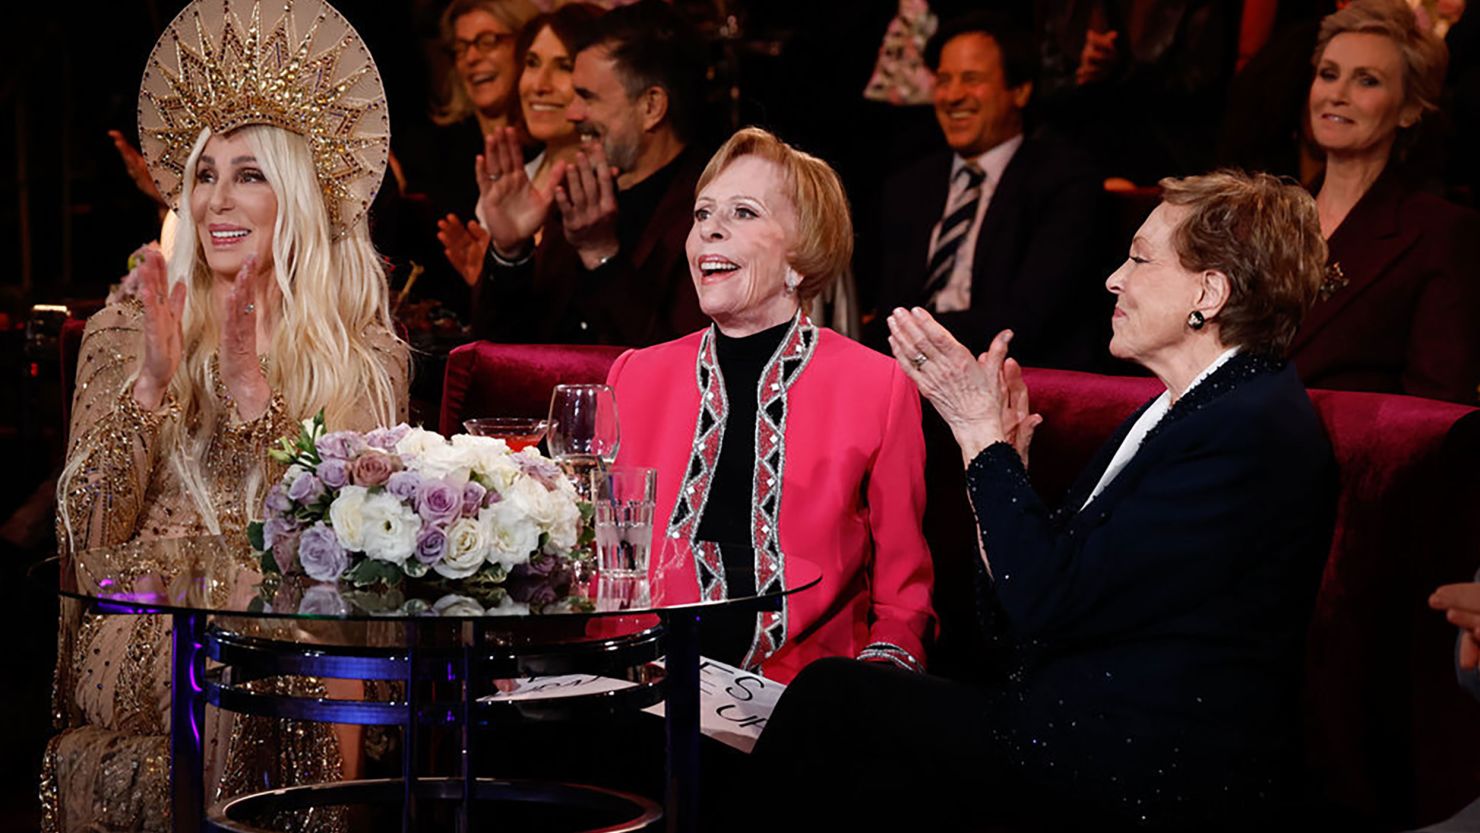 Cher, Carol Burnett and Julie Andrews in "Carol Burnett: 90 Years of Laughter + Love," airing Wednesday on NBC.